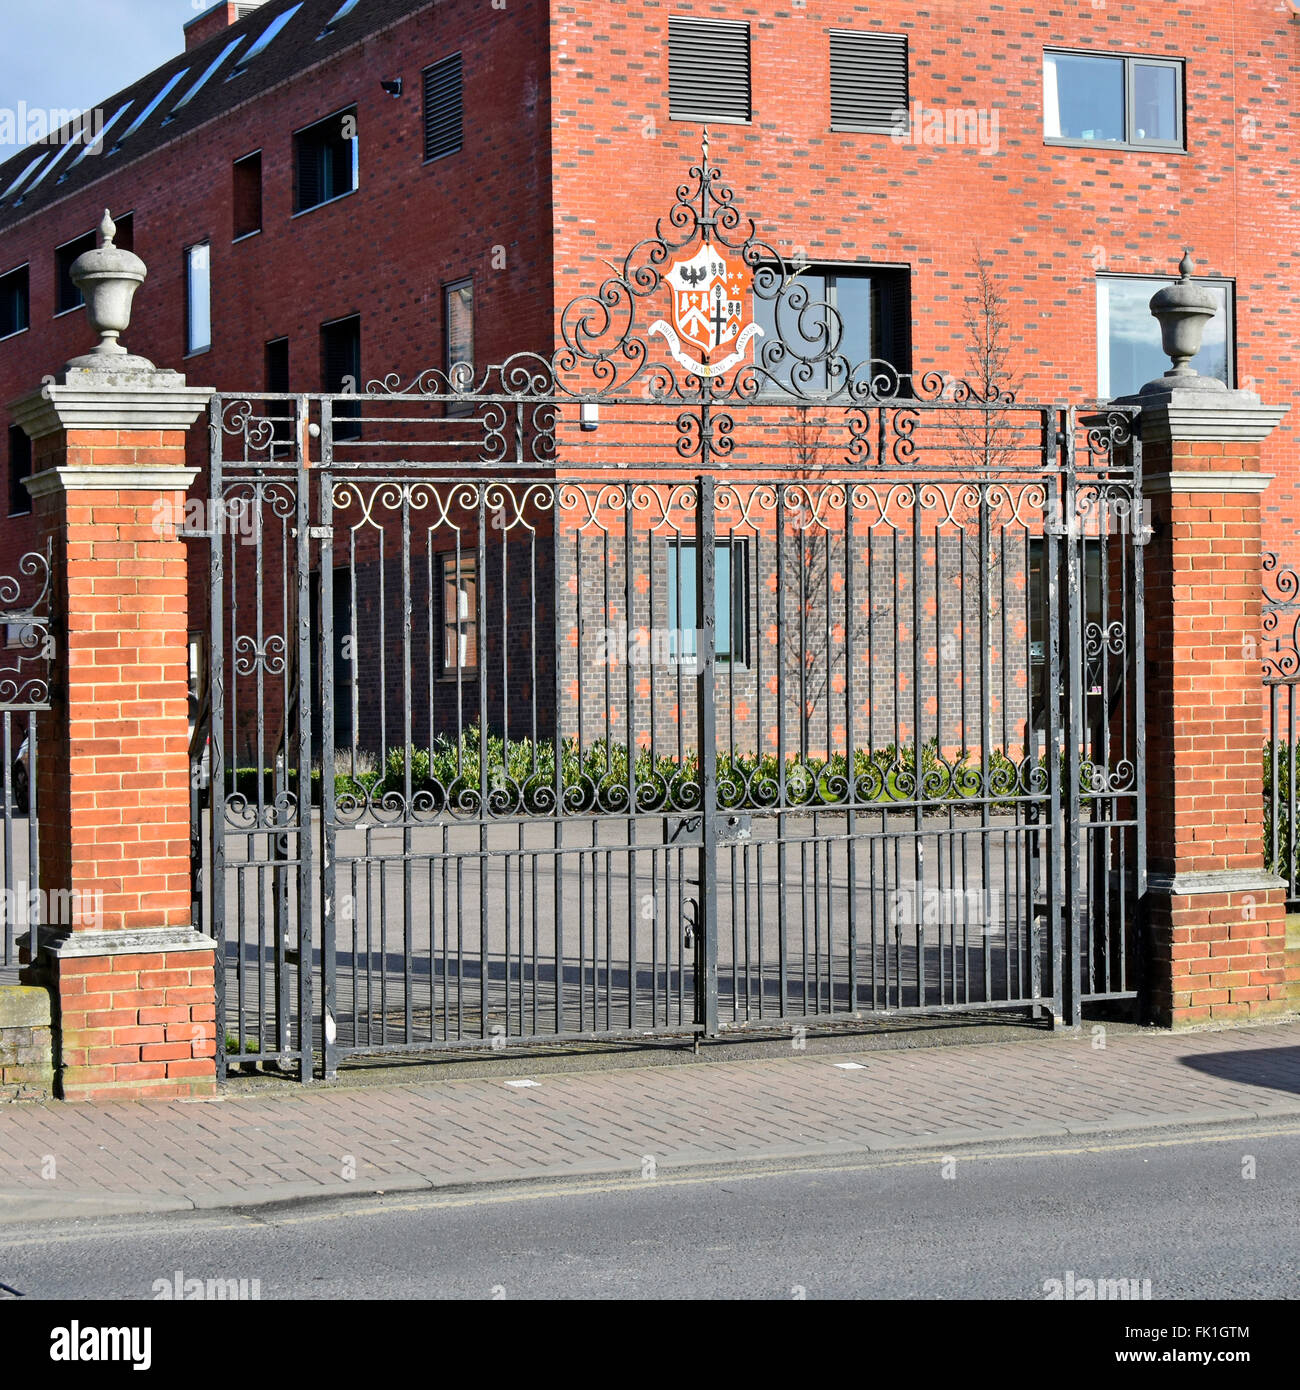 Brentwood School Essex Angleterre Royaume-Uni fermer les portes de l'école double entrée principale à l'avant de l'école privée avec les armoiries de l'école - voir Alamy FK1GTK Banque D'Images